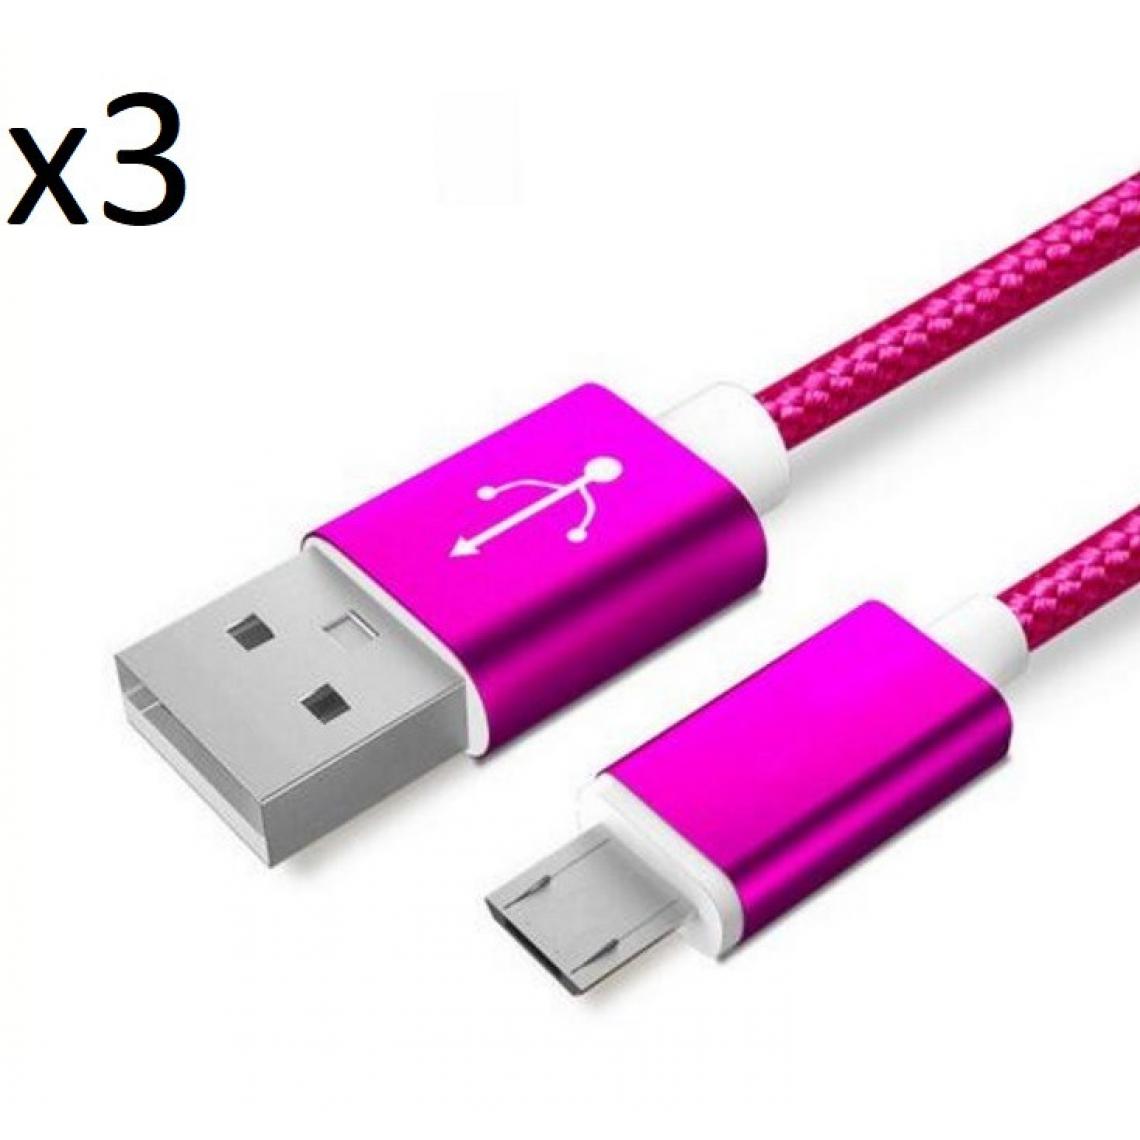 Shot - Pack de 3 Cables Metal Nylon Micro USB pour WIKO Sunset 2 Smartphone Android Chargeur (ROSE BONBON) - Chargeur secteur téléphone